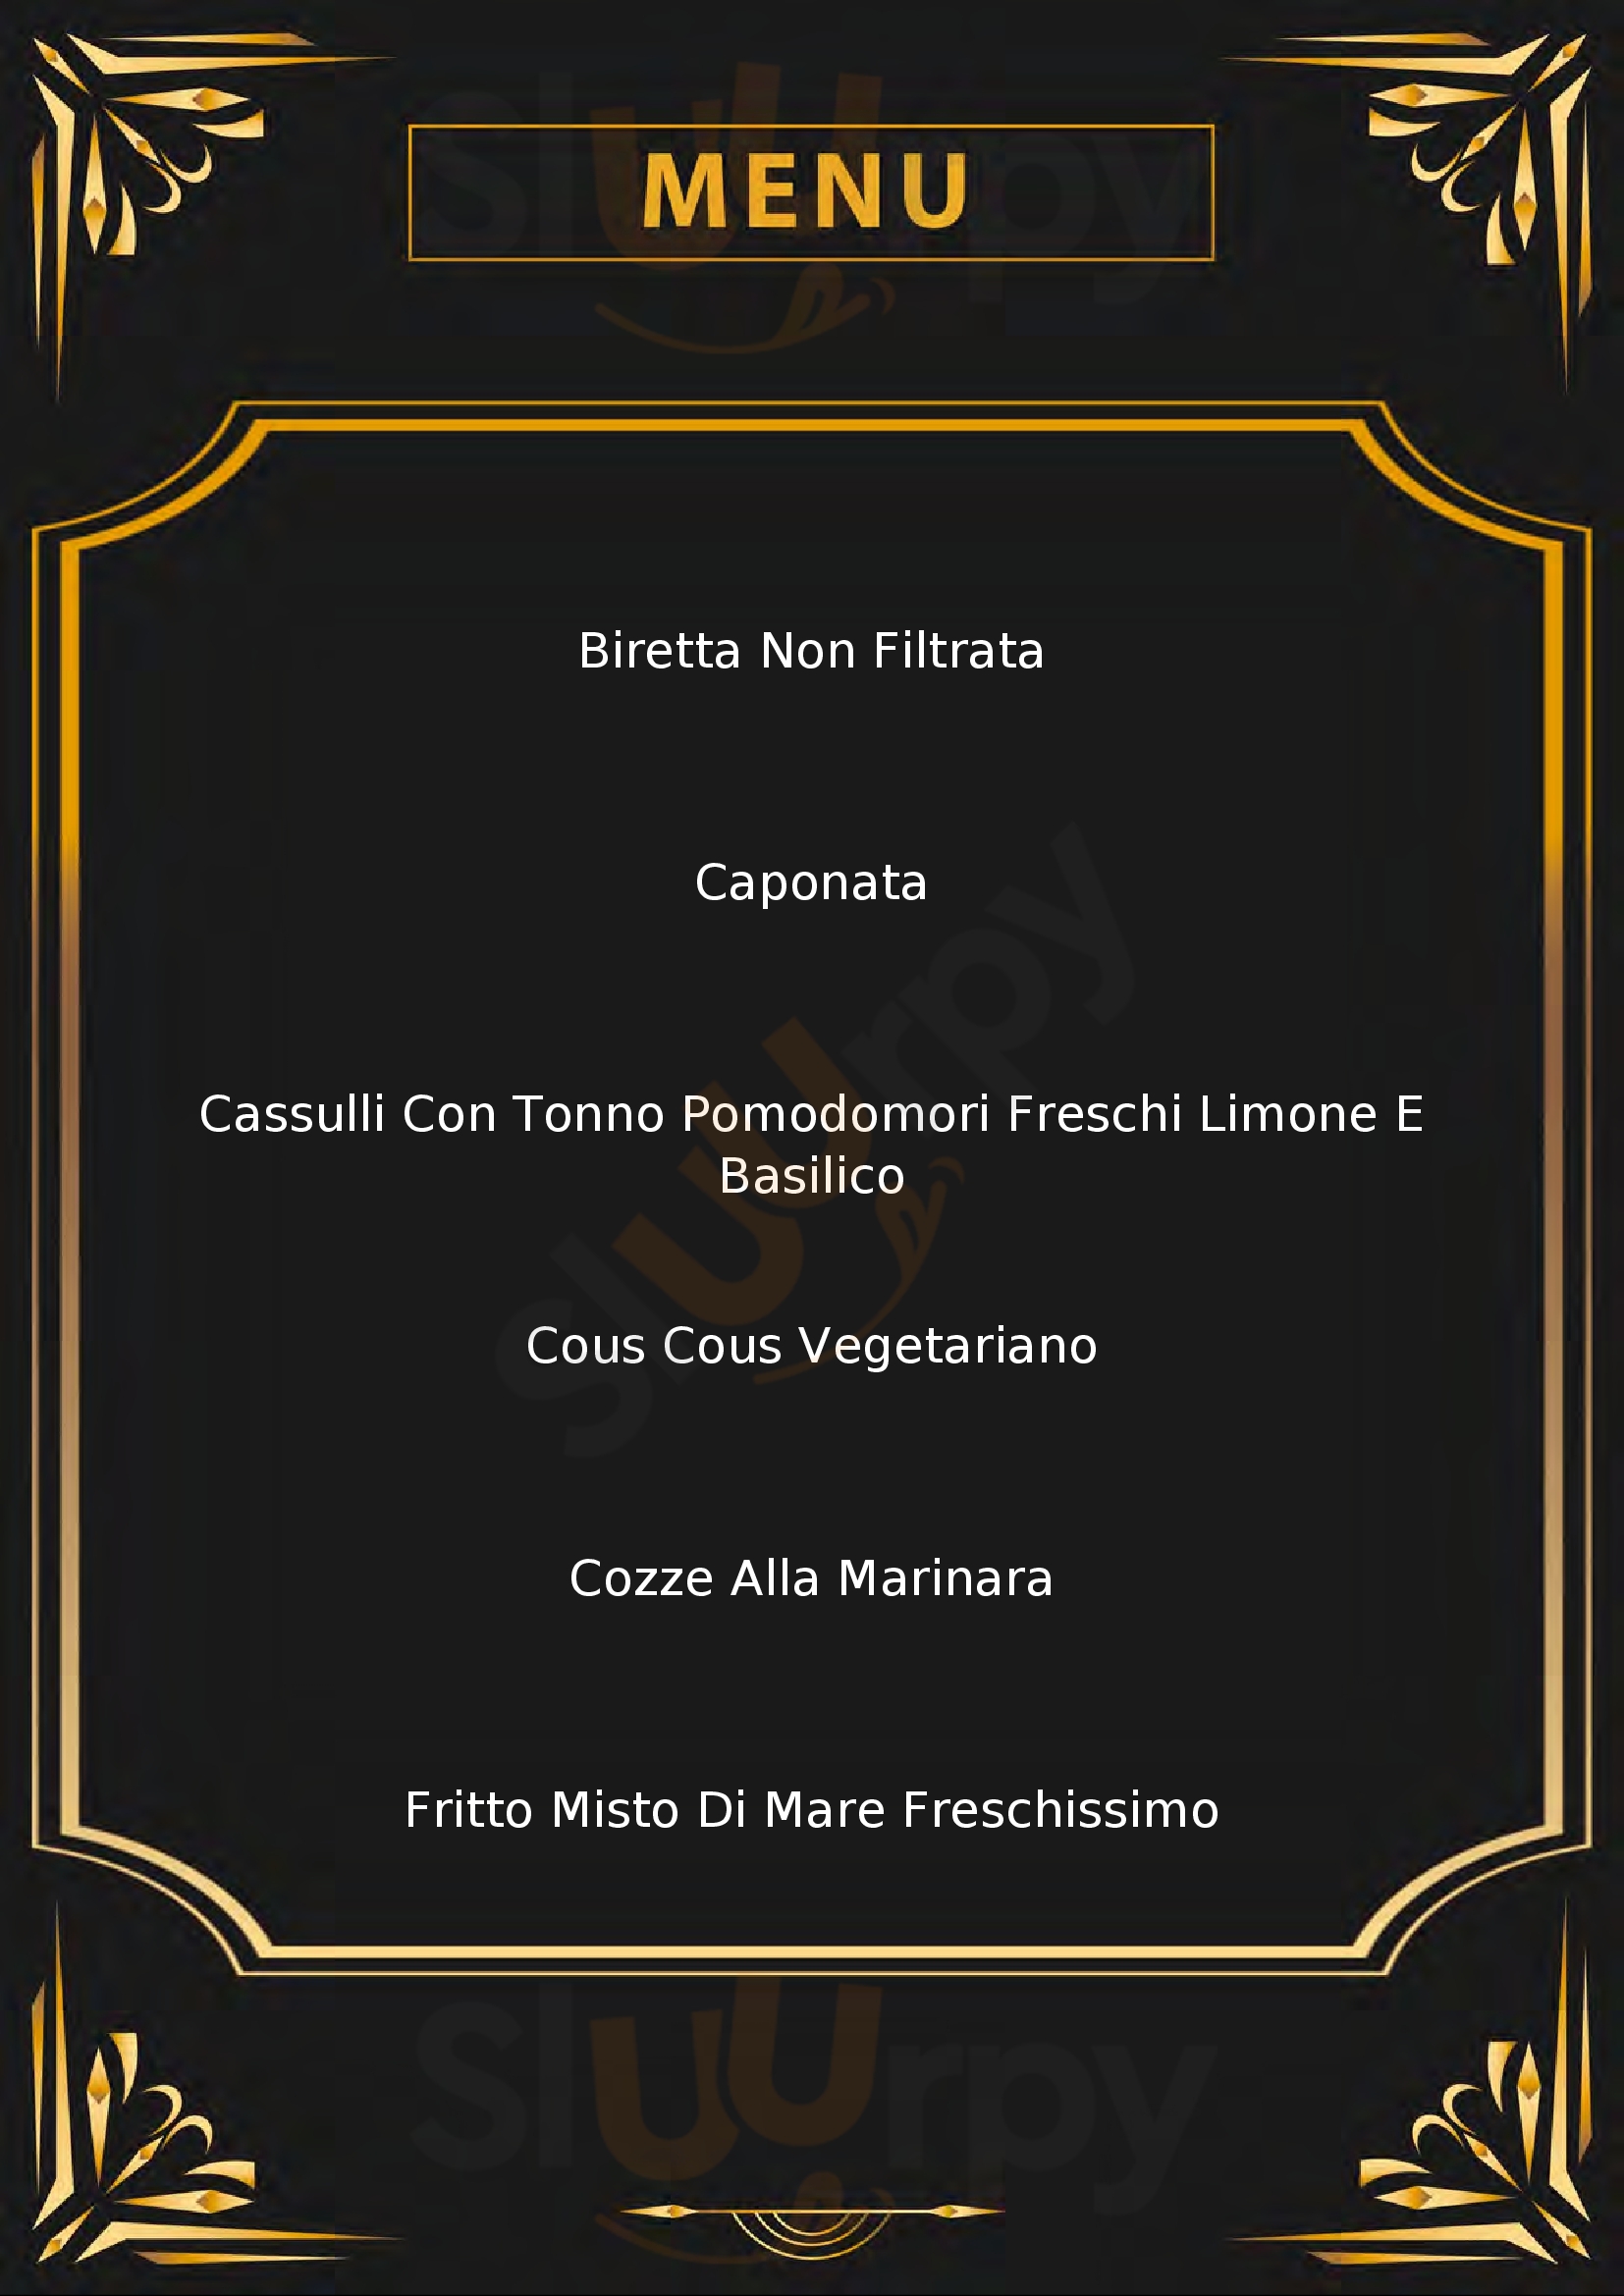 Gastronomia "Mamma Fina" Calasetta menù 1 pagina